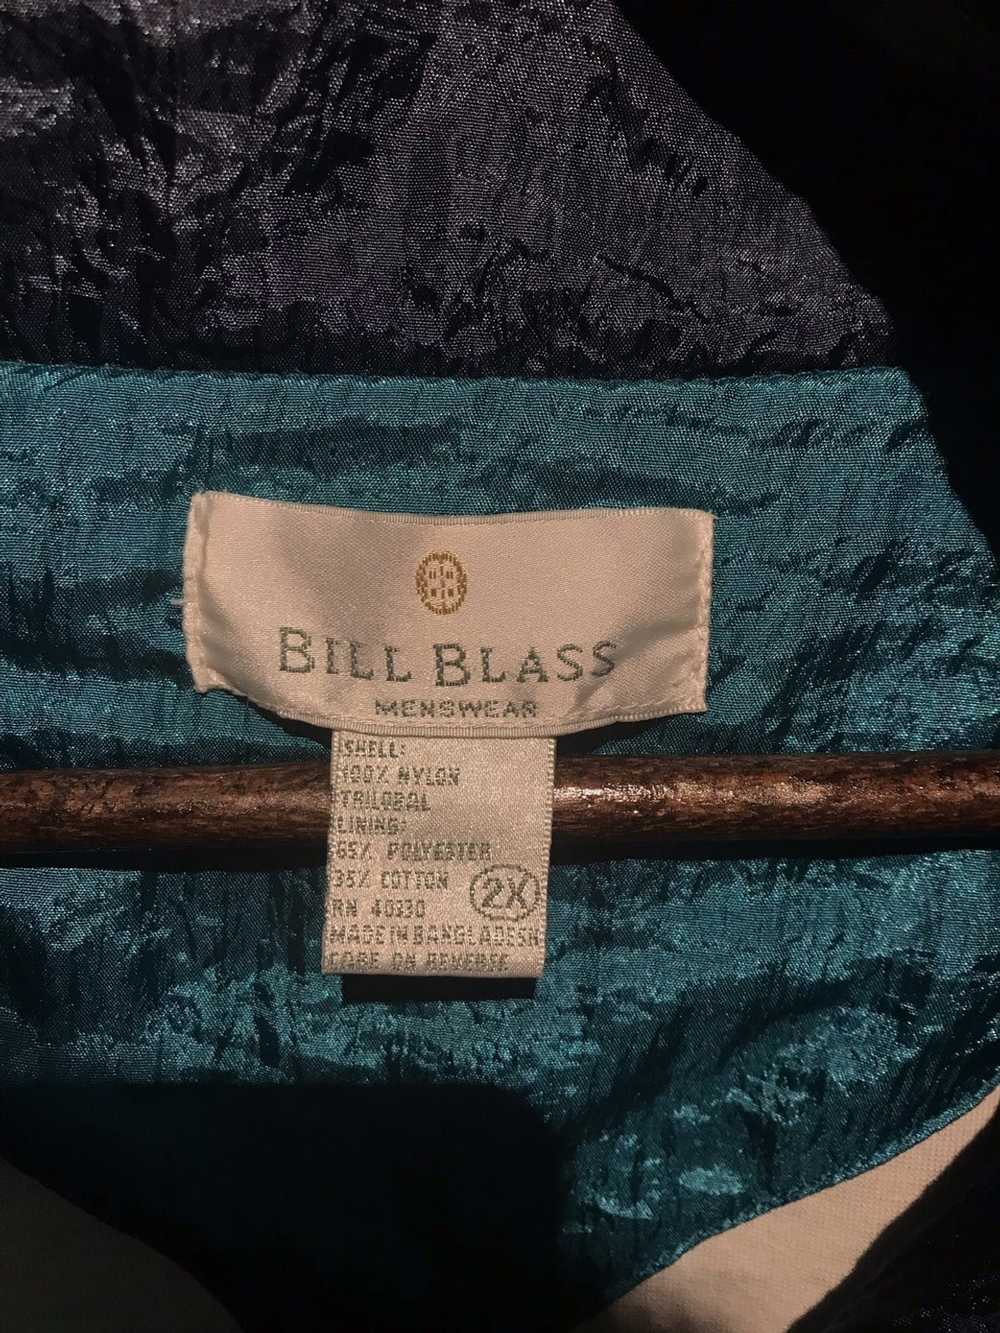 Bill Blass Vintage Bill Blass Windbreaker - image 2